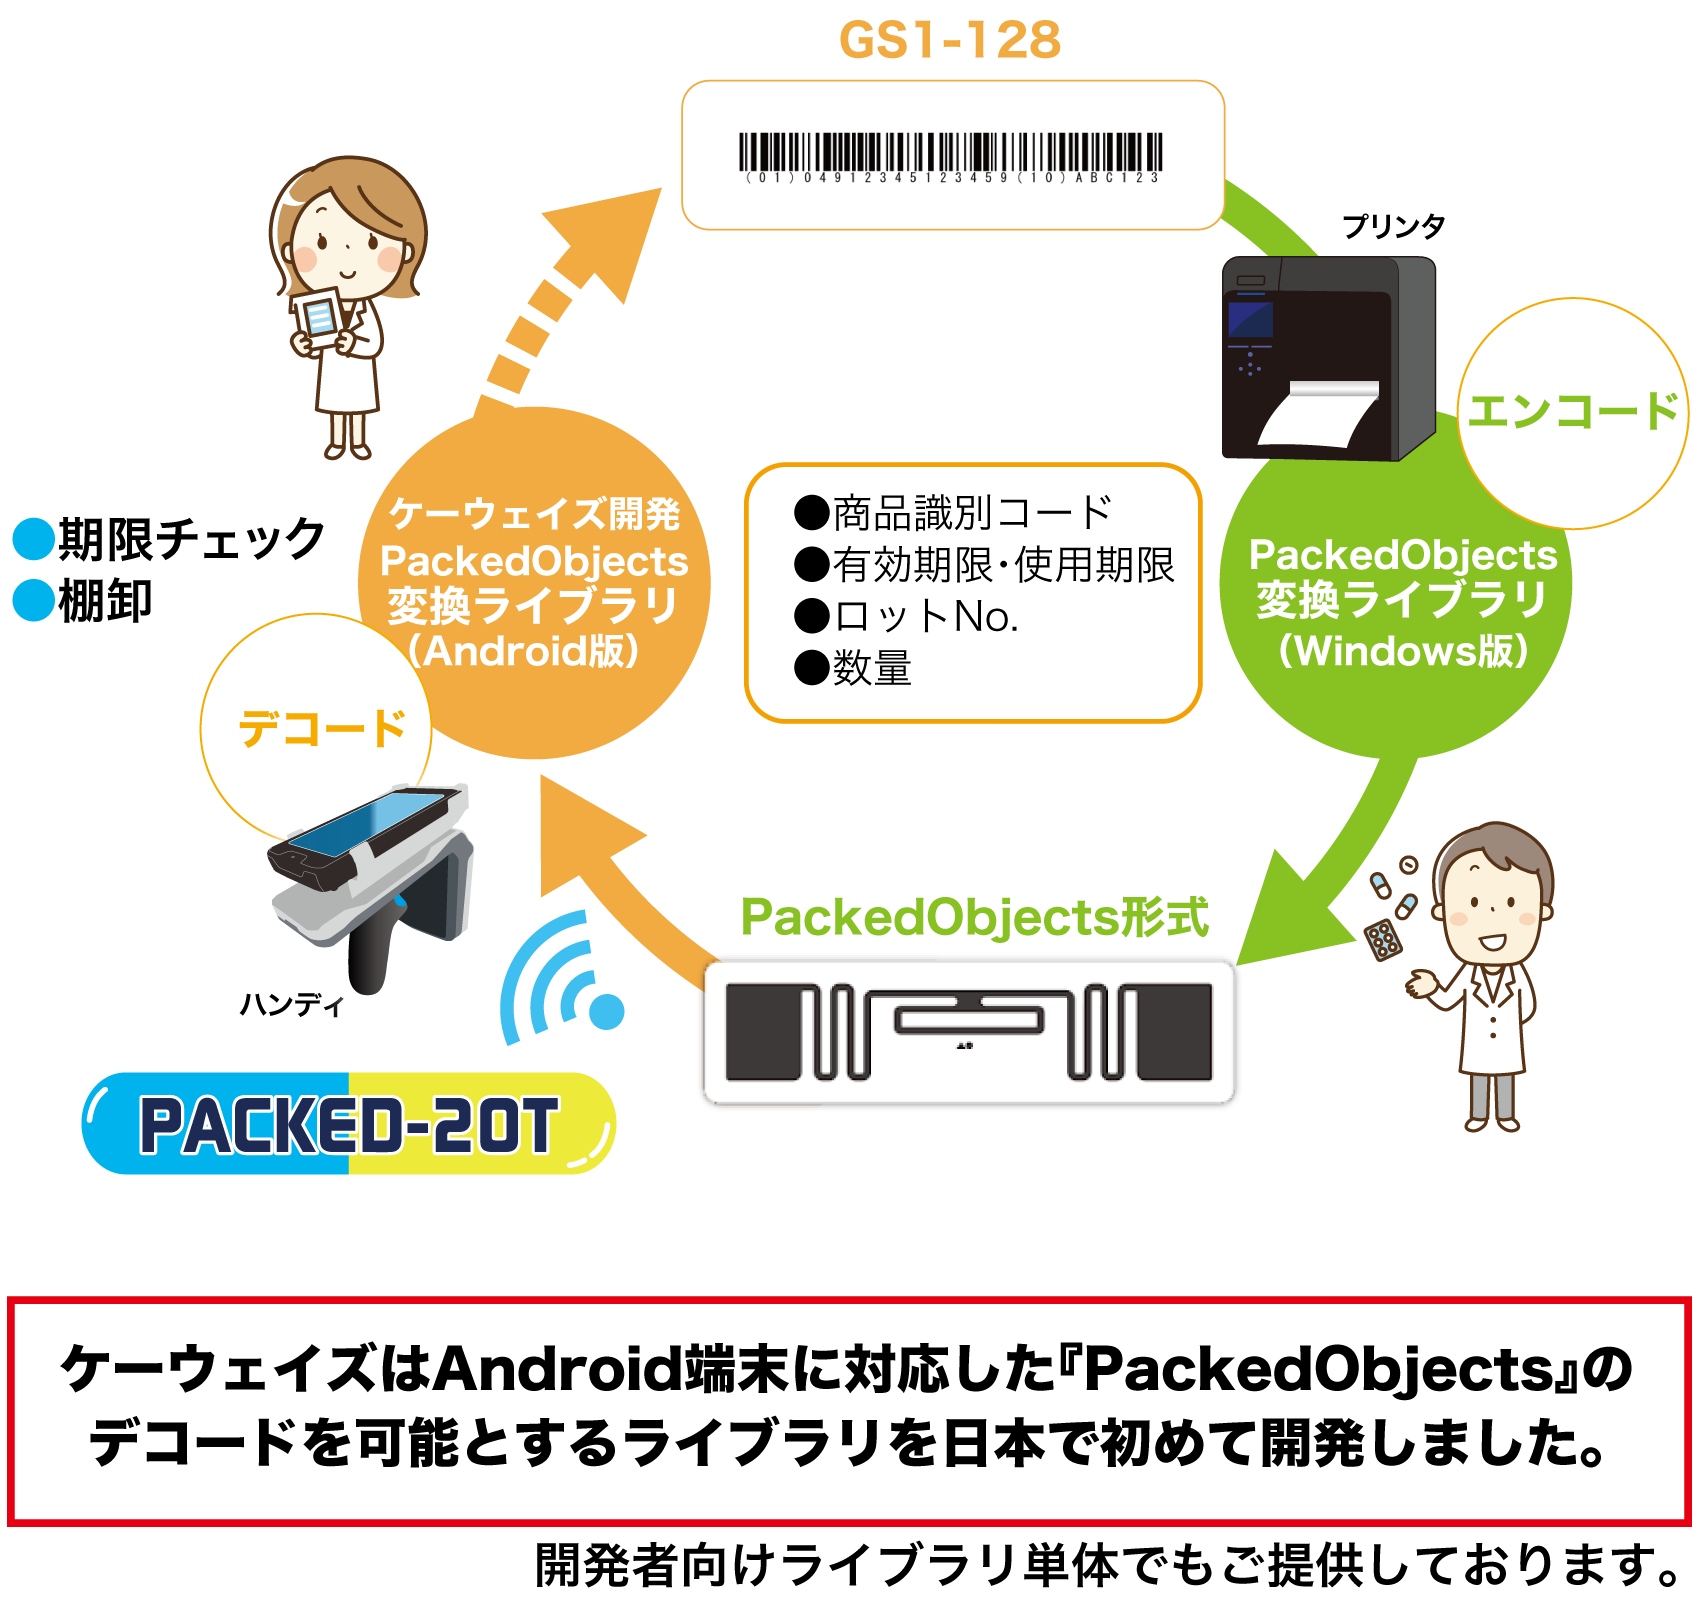 ケーウェイズはAndroid端末に対応した「PackedObjects」のデコードを加納とするライブラリを日本で初めて開発しました